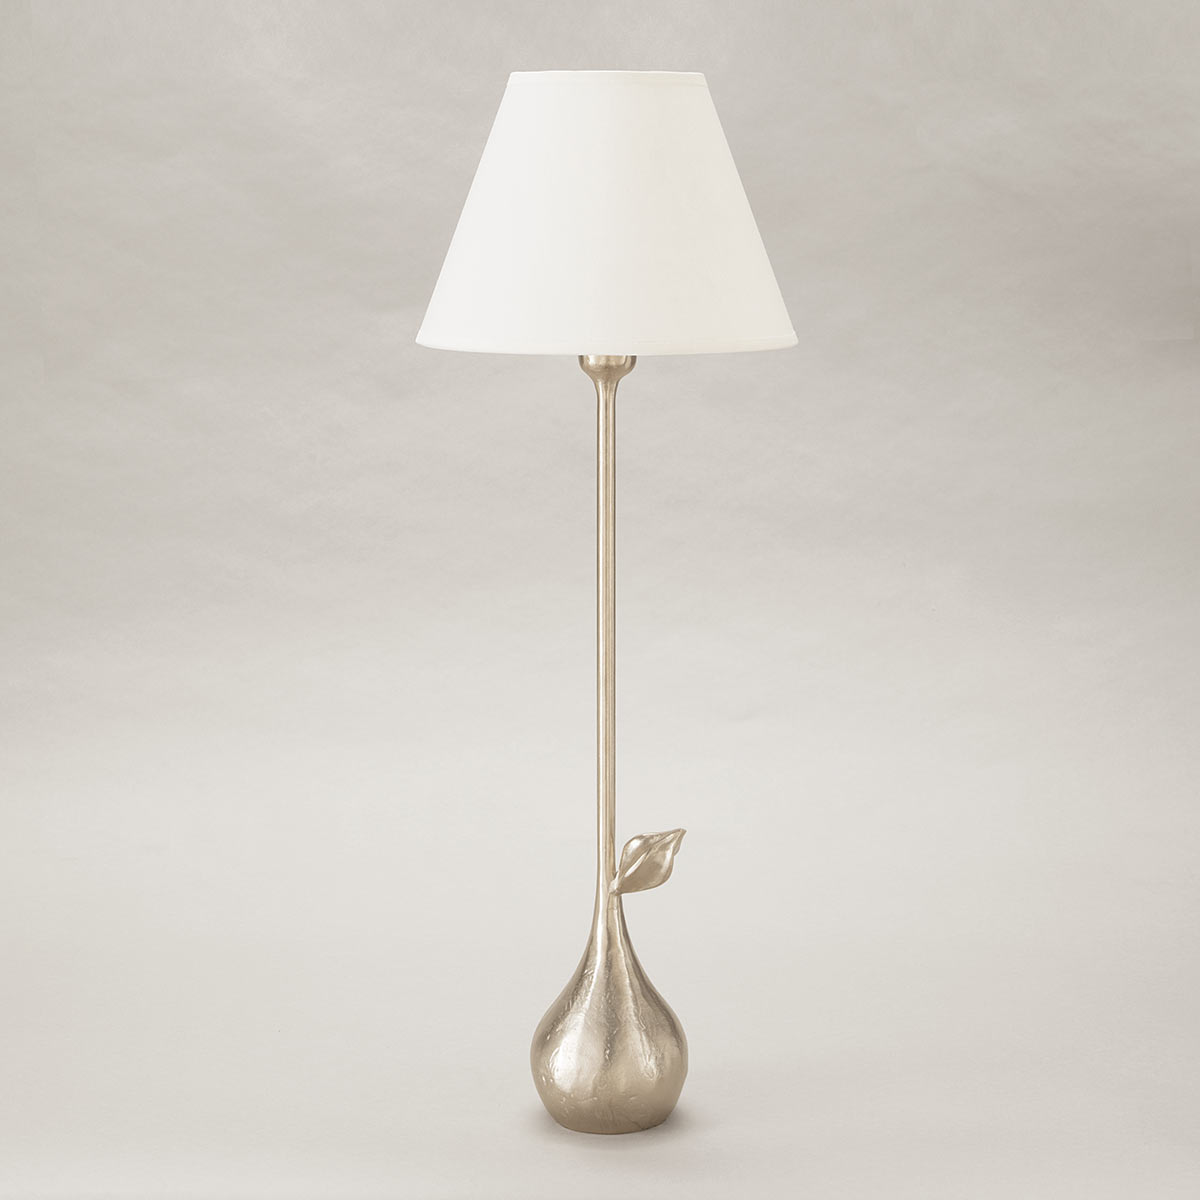 objet-insolite-clara-lampe-bronze-nickel-Decoris-Interior_Design-Zurich.jpg